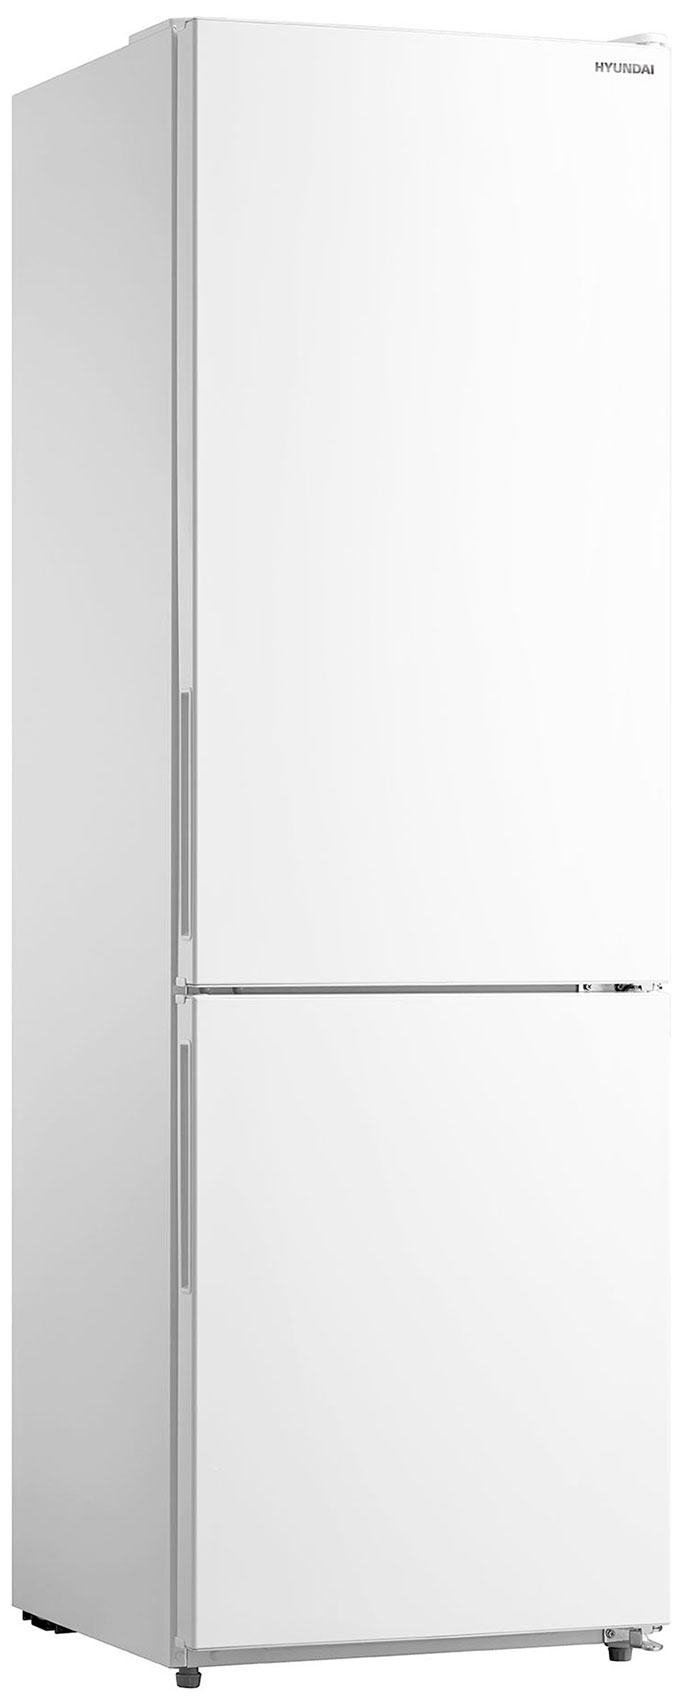 Холодильник HYUNDAI CC3093FWT белый двухкамерный холодильник hyundai cc3093fwt белый